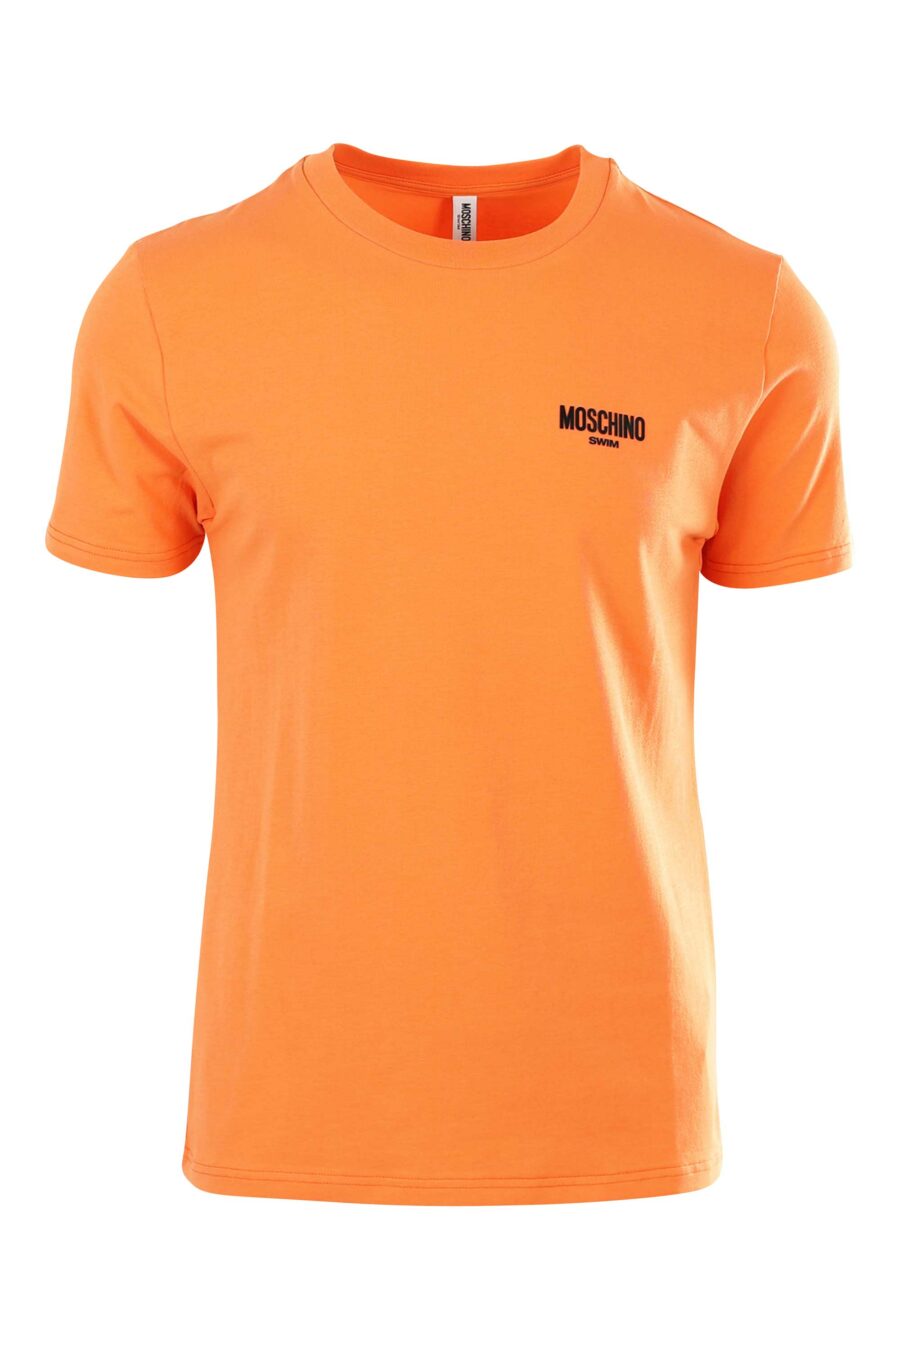 Orangefarbenes T-Shirt mit schwarzem Minilogo - 667112795752